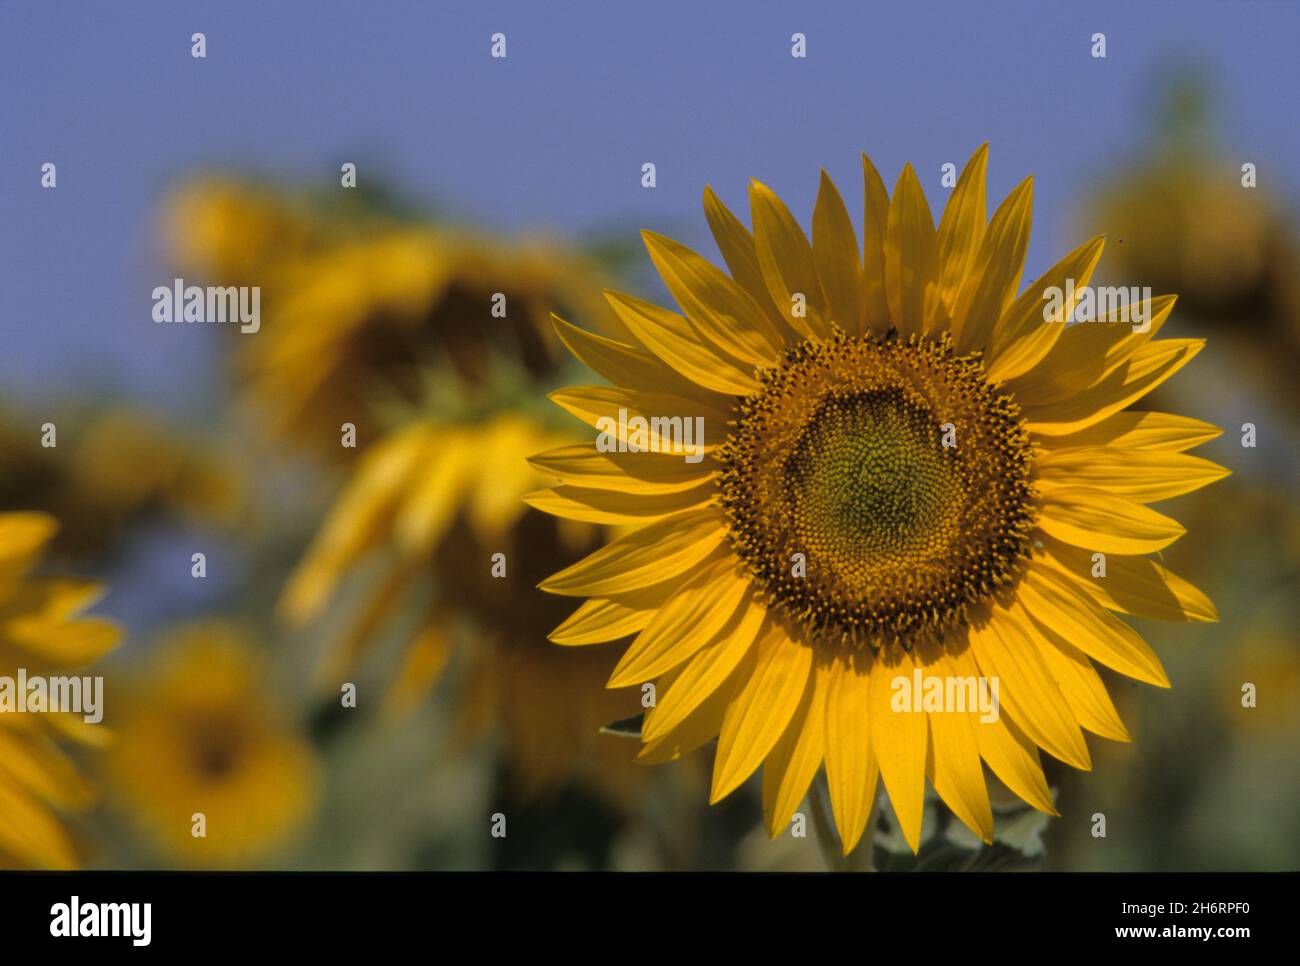 sunflowers urbino italy Stock Photo